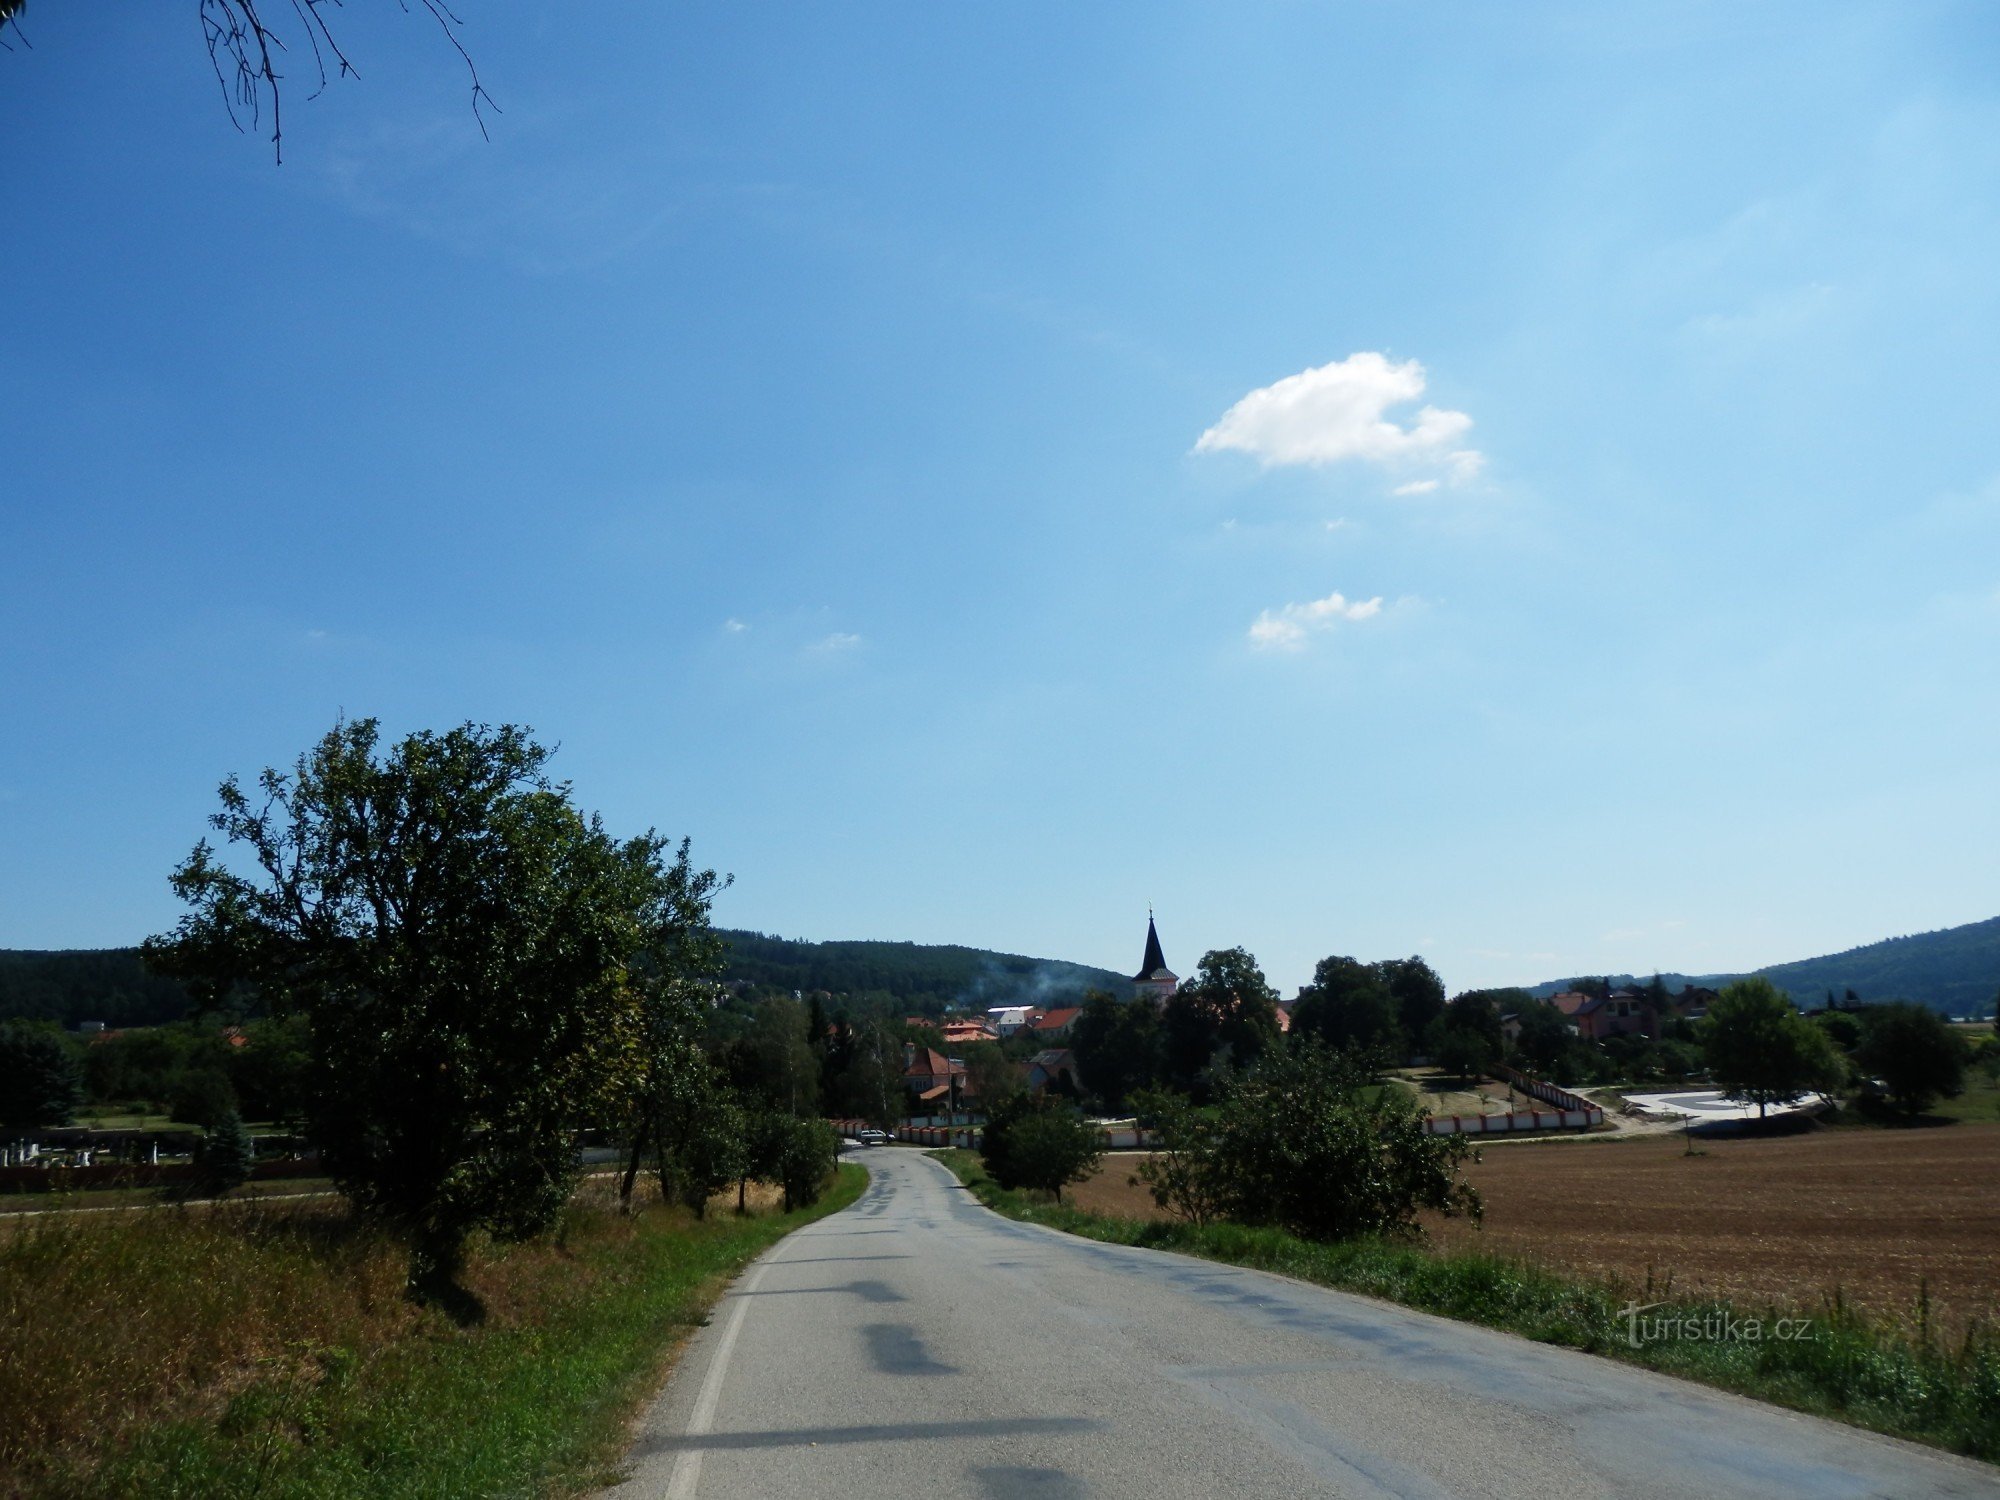 Από το Kuřimi στο Blansko